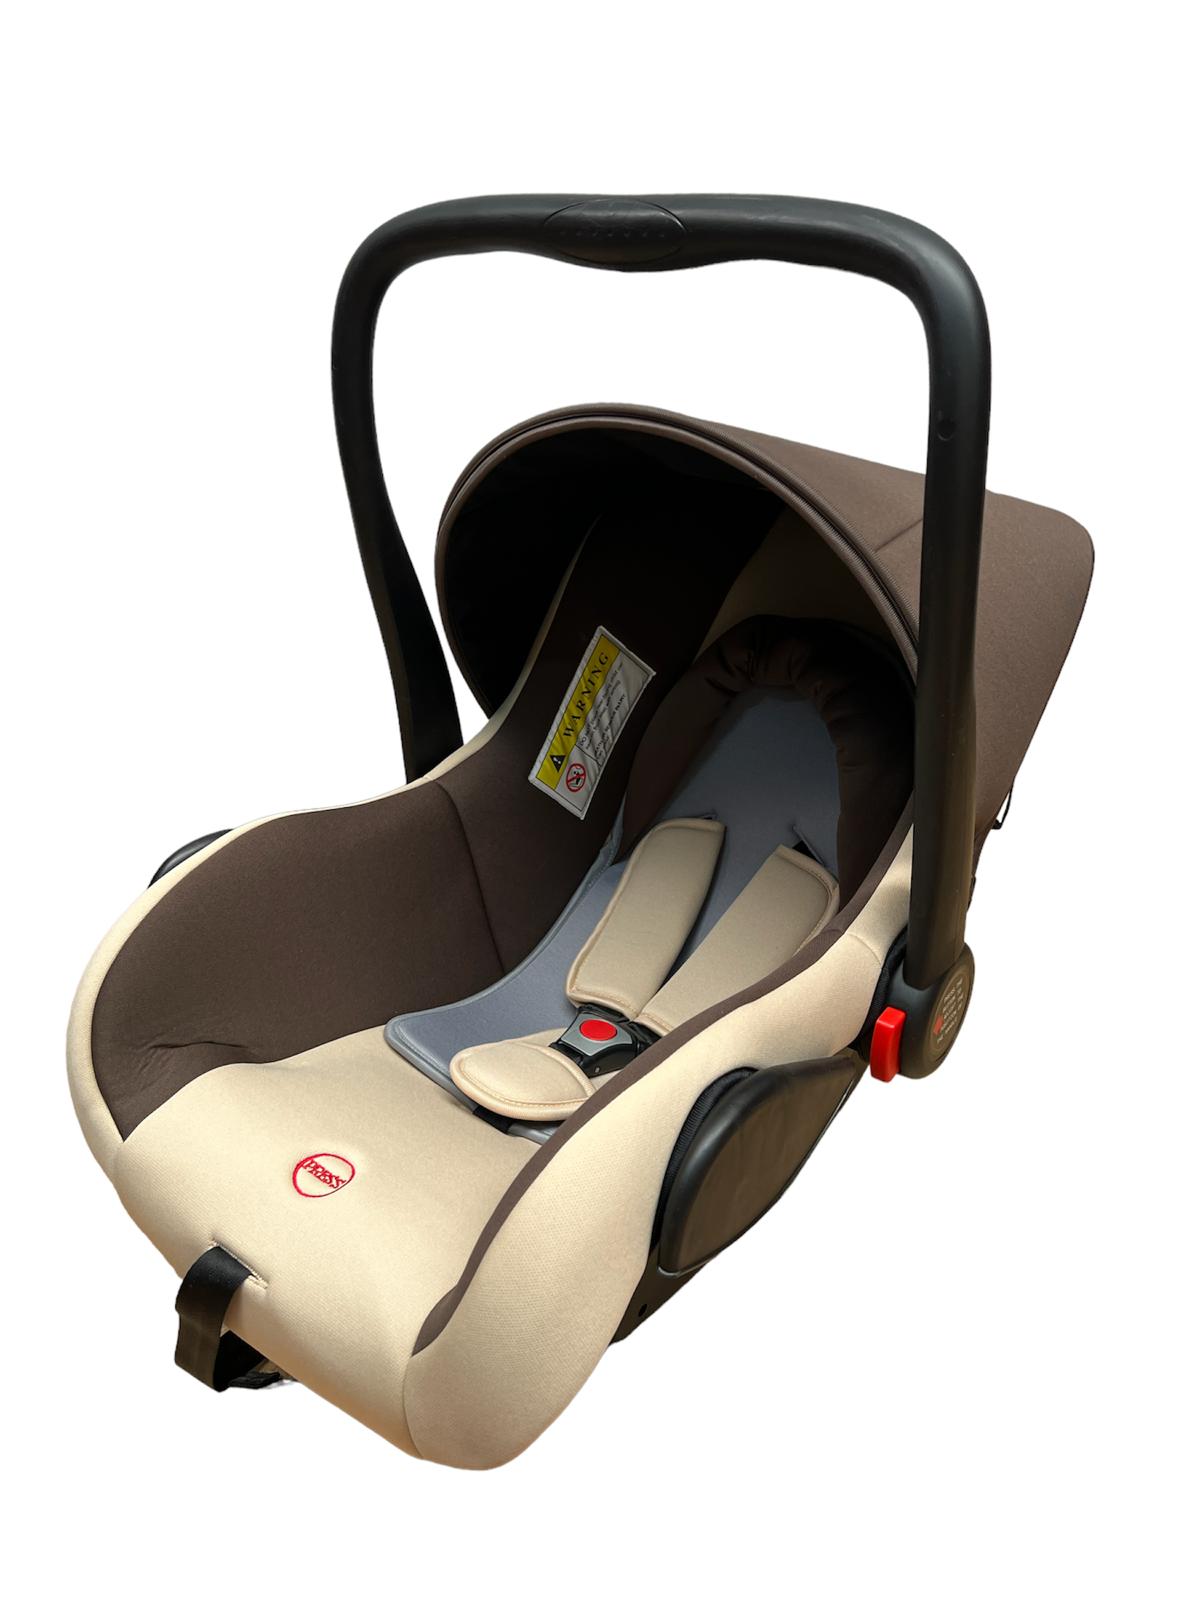 Κάθισμα αυτοκινήτου τύπου Shell για μωρά, ρυθμιζόμενο χερούλι, 26 cm, CM01